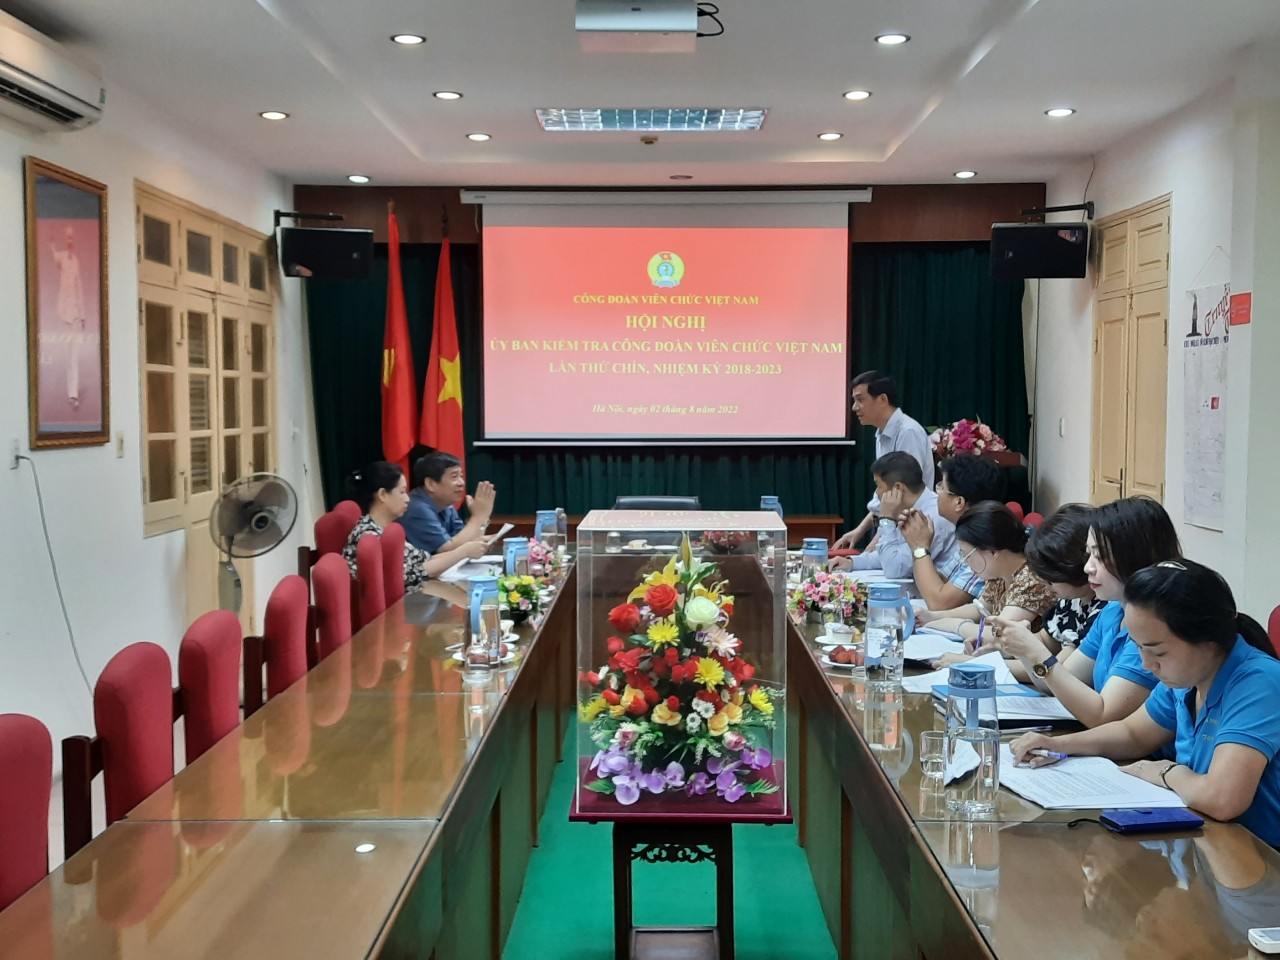 Hội nghị Ủy ban Kiểm tra Công đoàn Viên chức Việt Nam Lần thứ chín, nhiệm kỳ 2018 - 2023